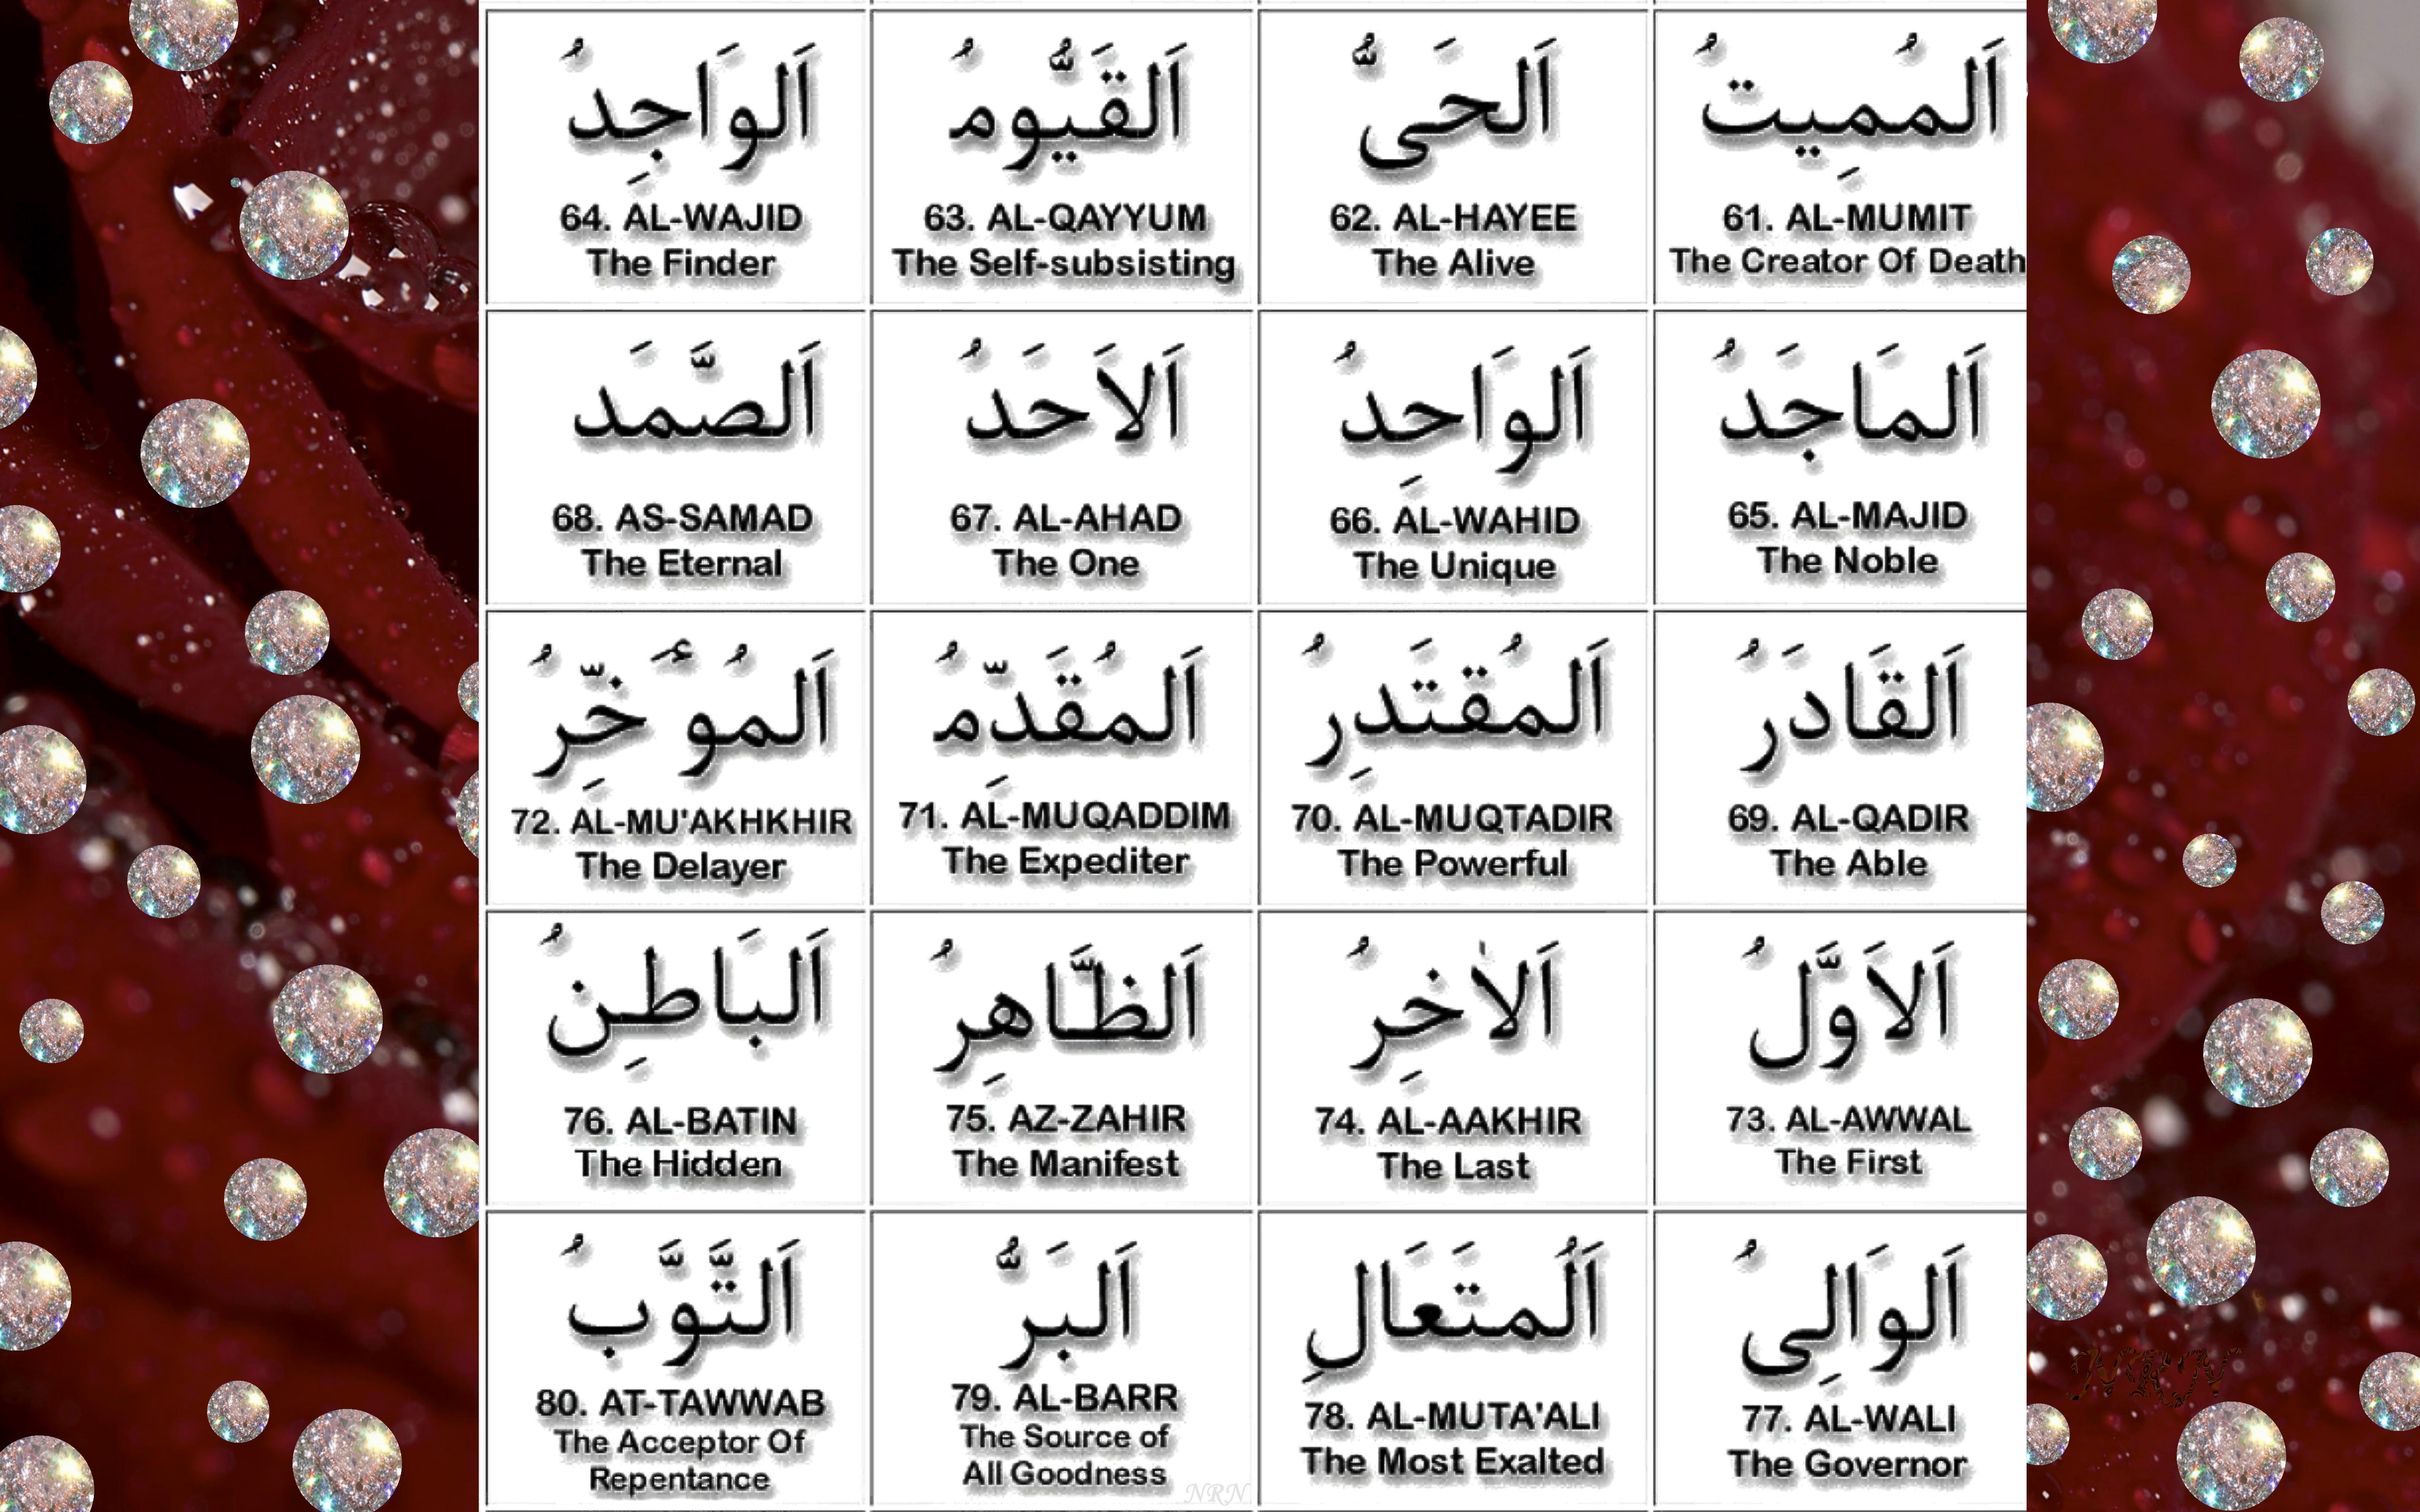 99 names of Allah - 4